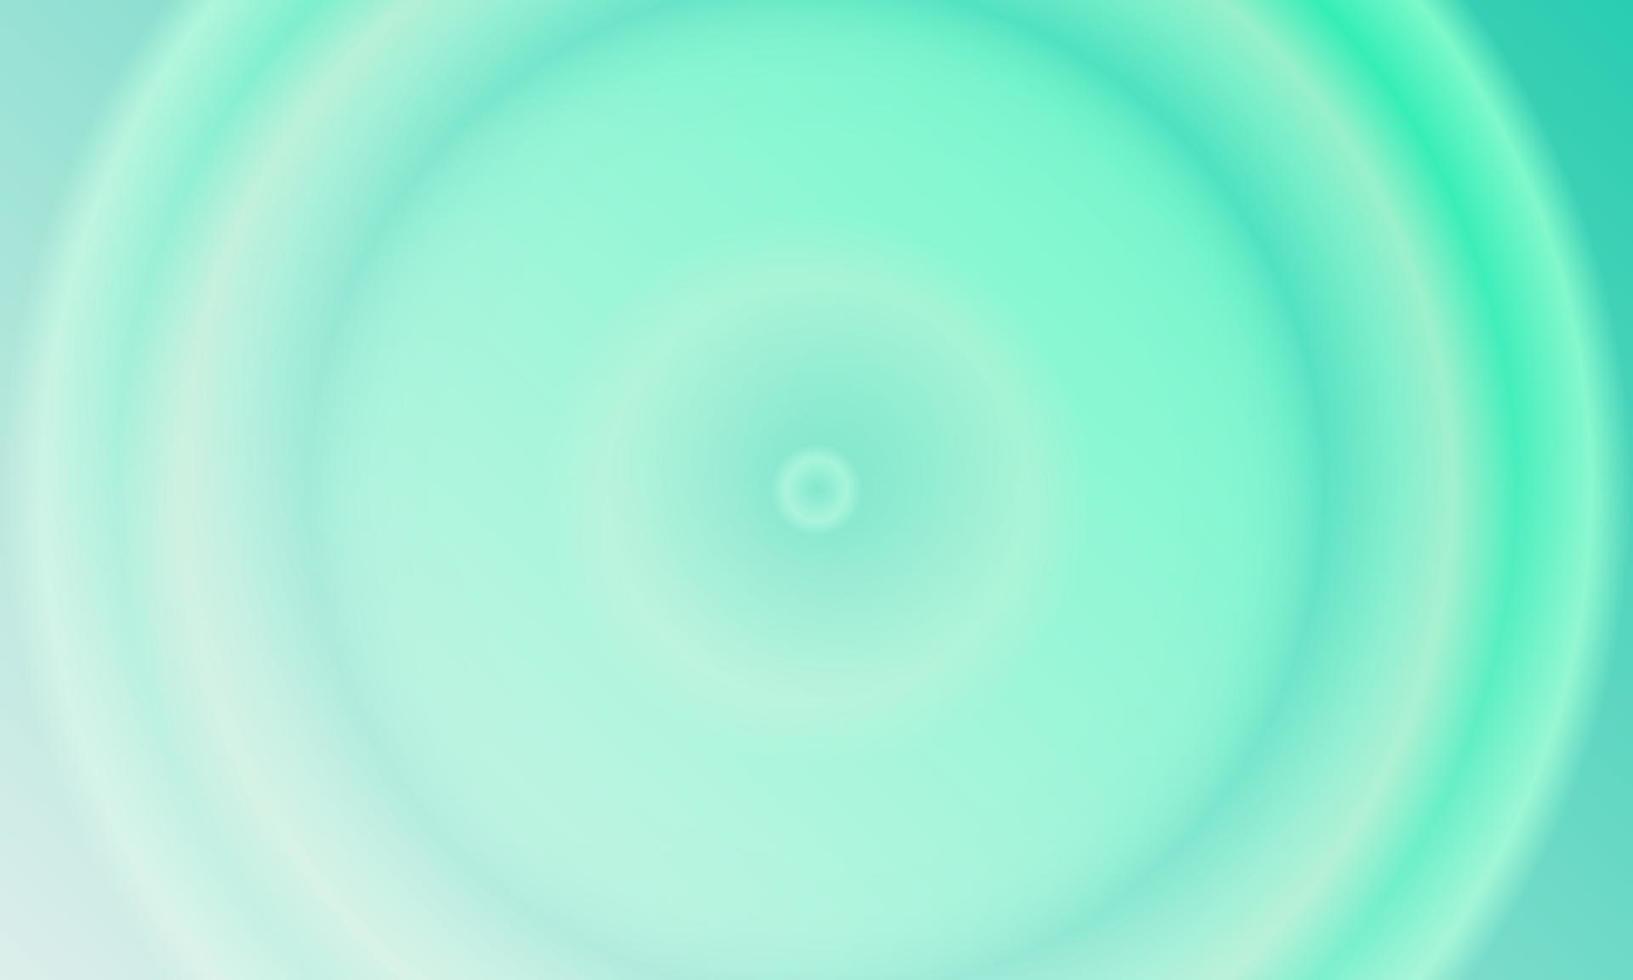 Tosca grüner und weißer radialer Farbverlauf abstrakter Hintergrund. einfacher, minimalistischer, moderner und farbenfroher Stil. Verwendung für Homepage, Hintergrund, Hintergrundbild, Banner oder Flyer vektor